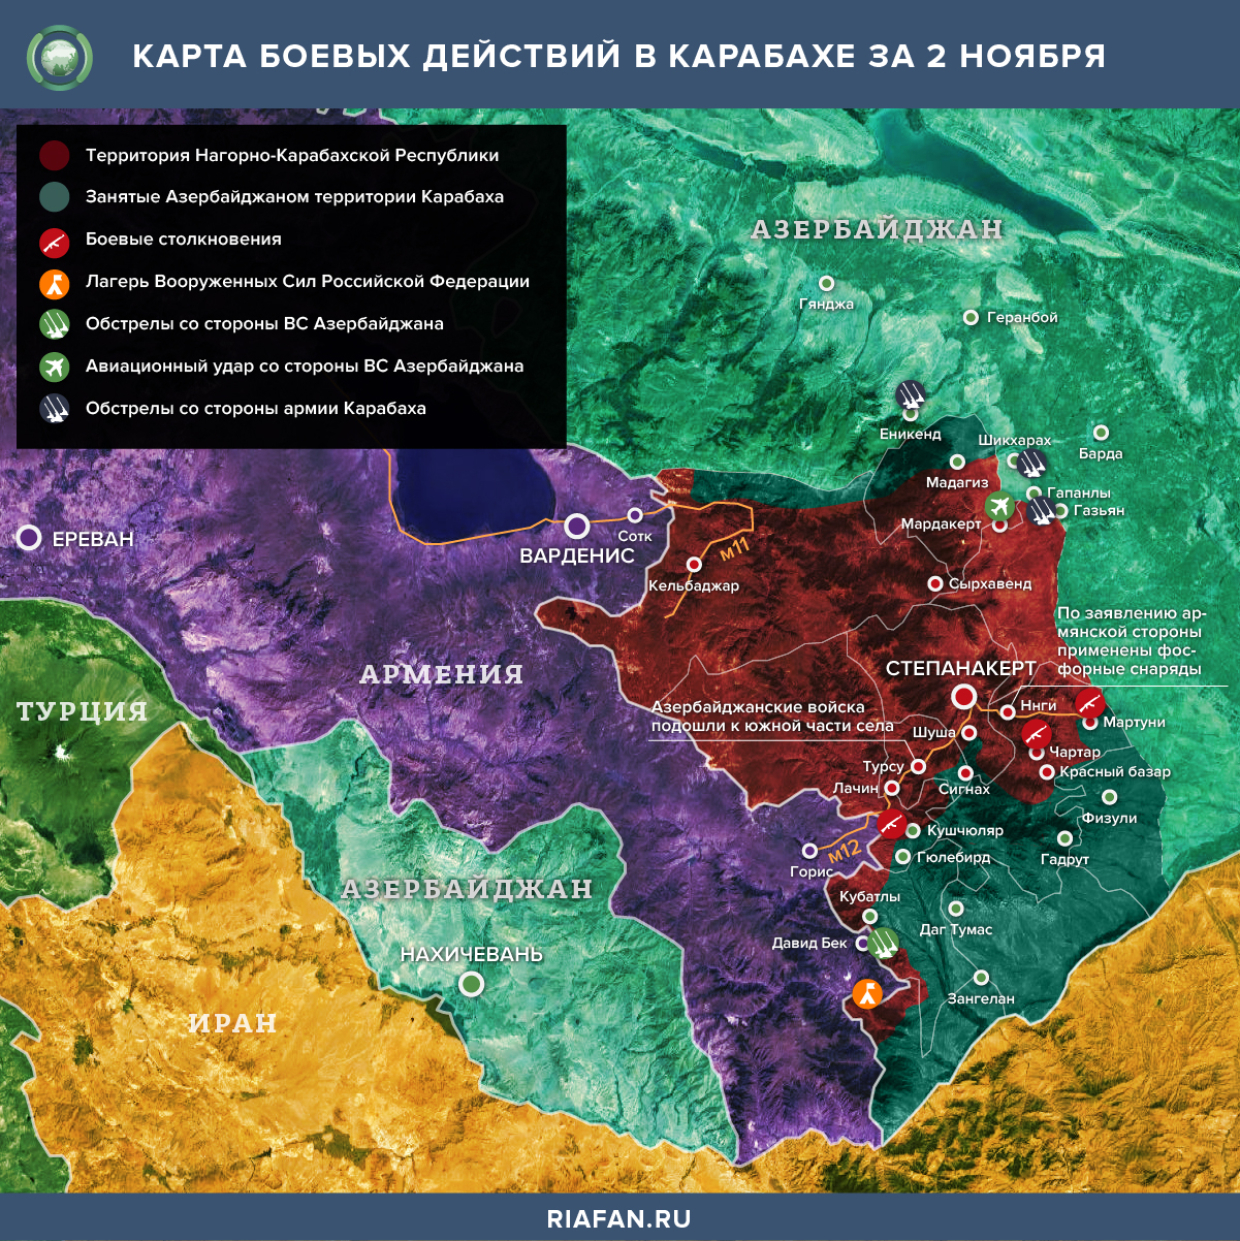 Карта боевых действий в Нагорном Карабахе за 2 ноября